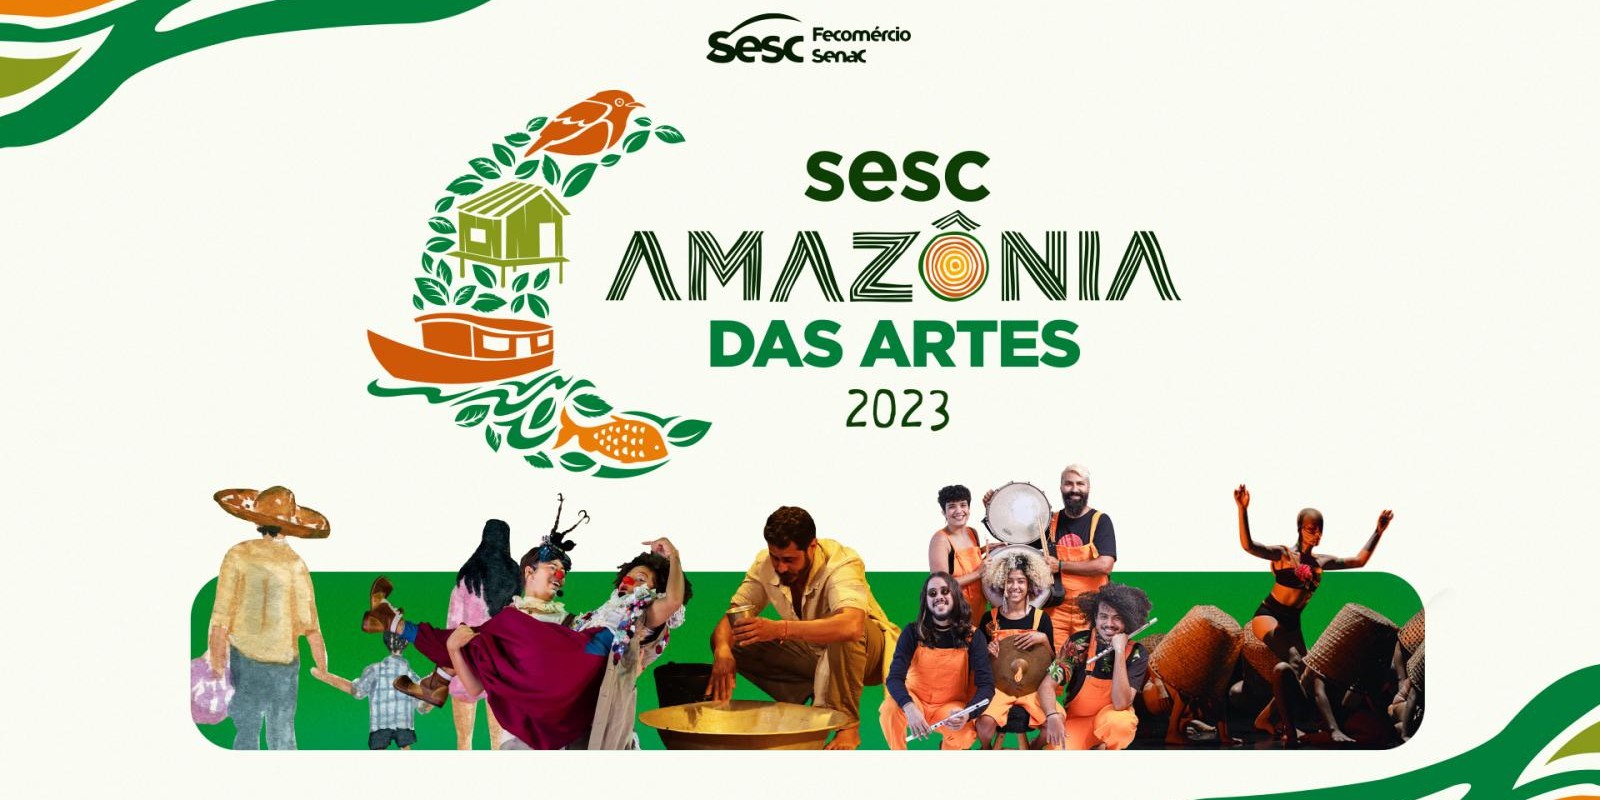 Sesc Amazônia das Artes traz para Macapá circuito com 15 espetáculos gratuitos de artistas da região